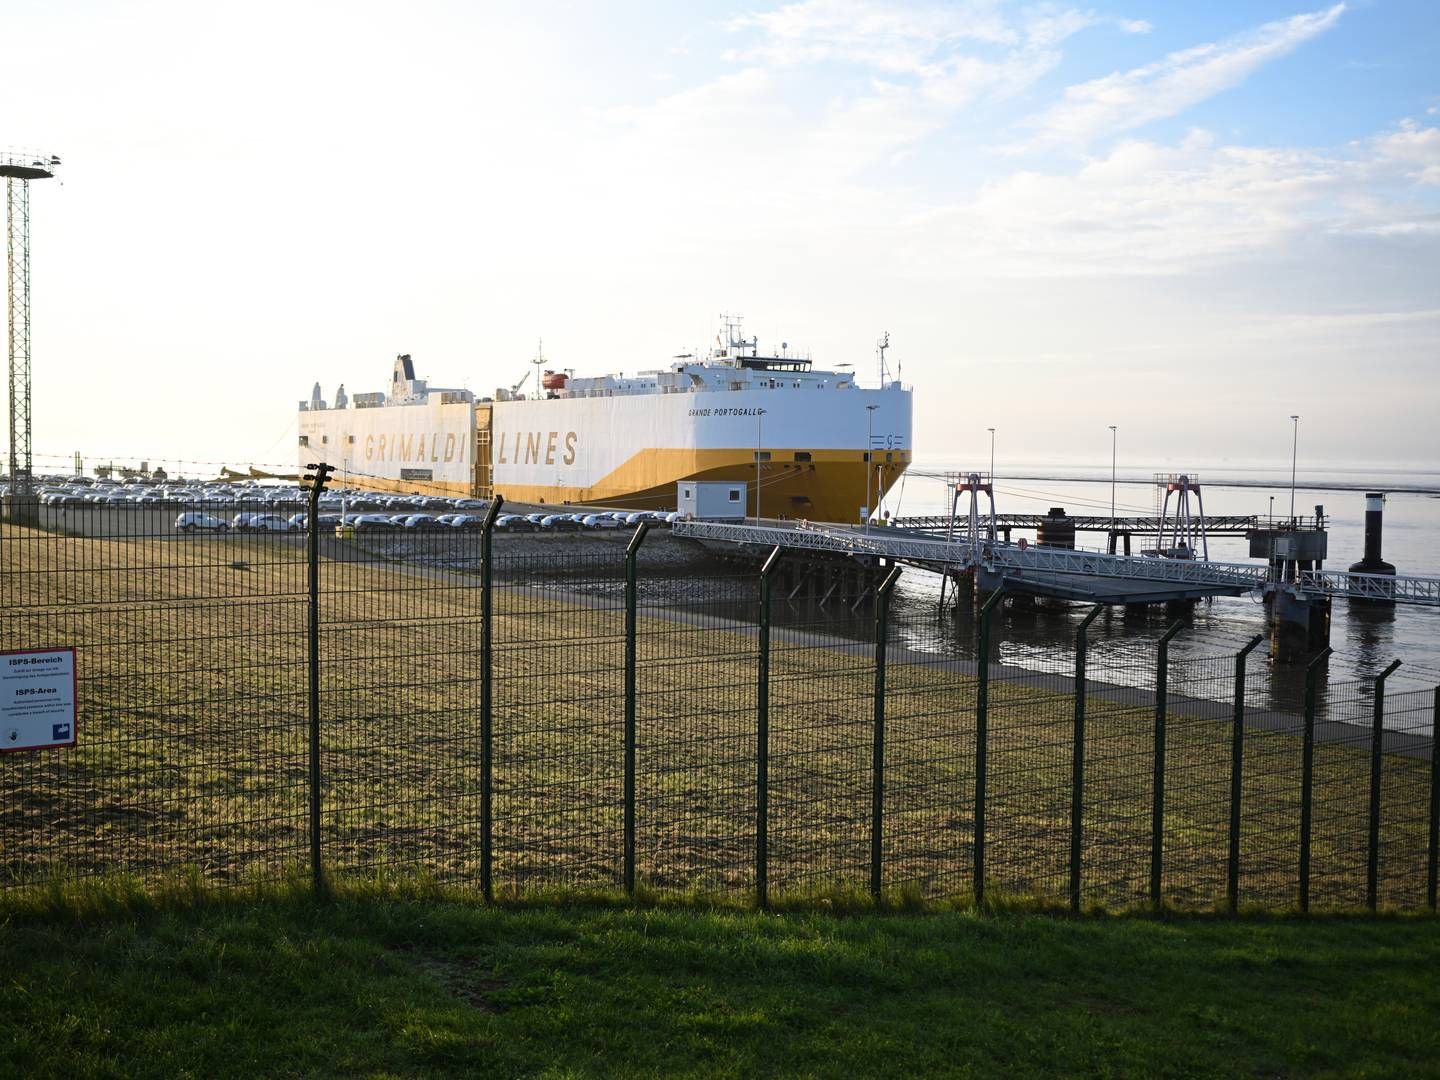 Bilskib i havnen i Emden, en af havnene i den tyske delstat Niedersachsen, som frygter, at besparelser vil bremse deres udvikling. | Photo: Lars Penning/AP/Ritzau Scanpix